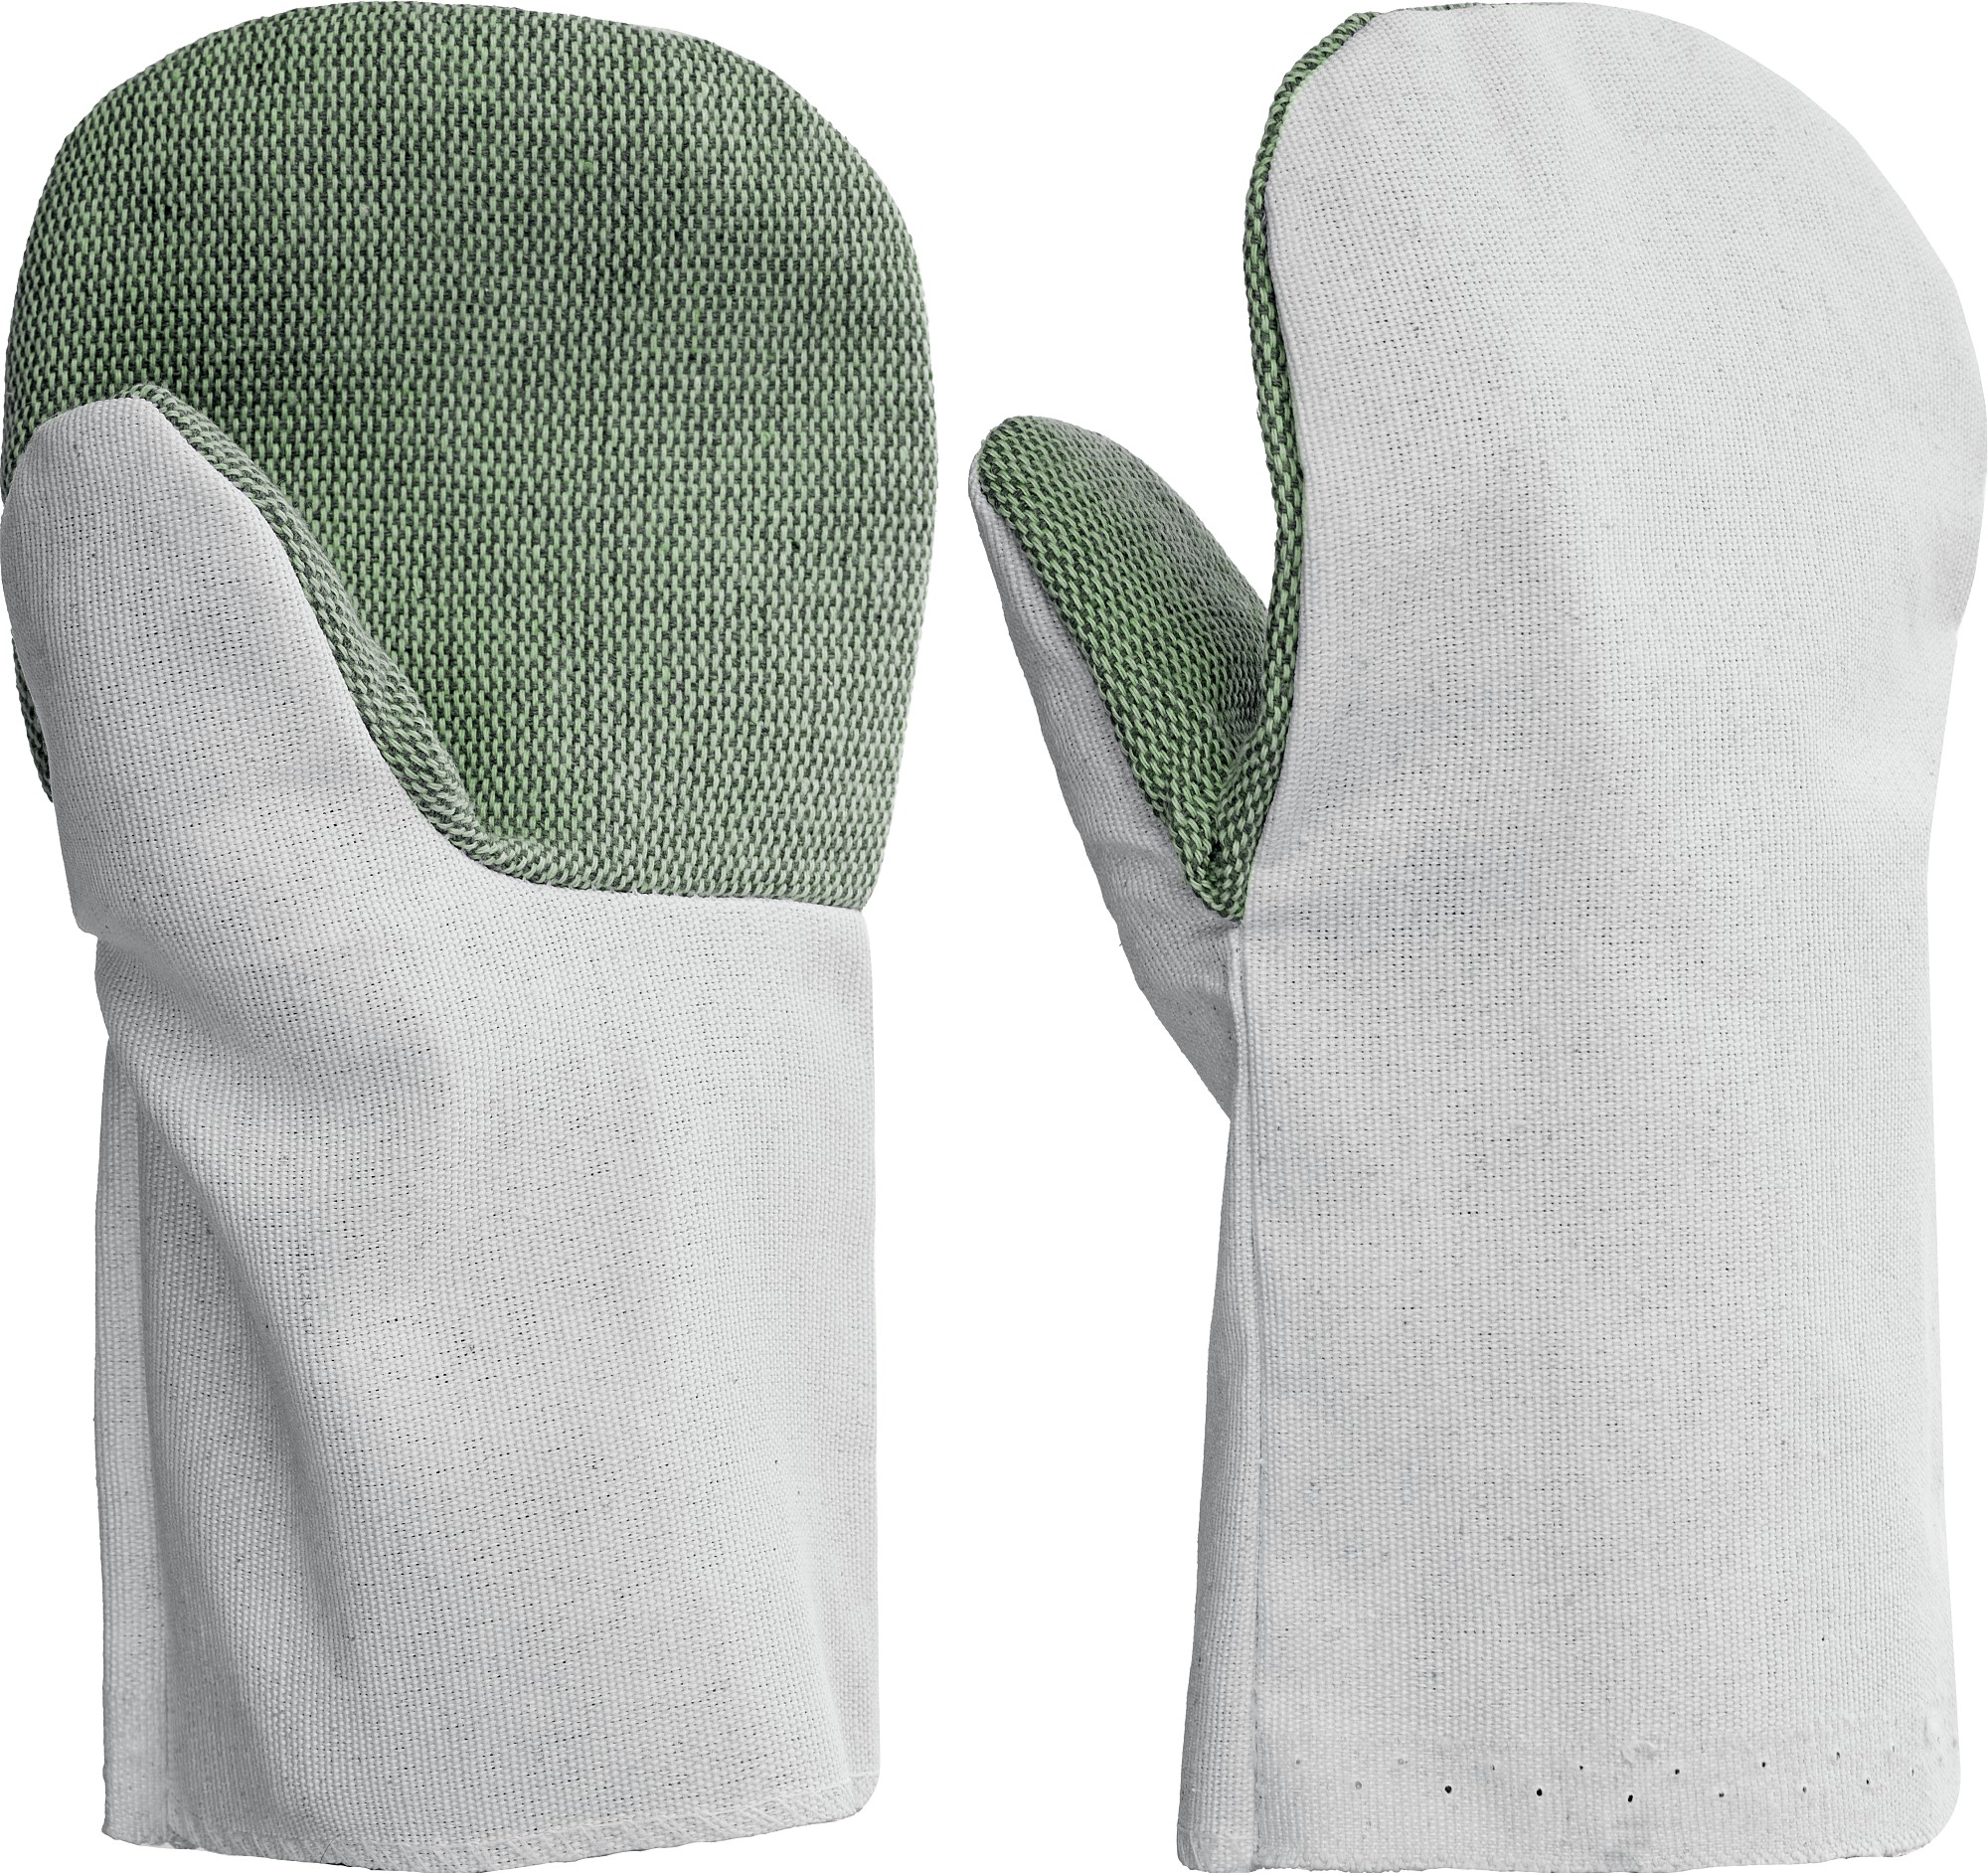 СИБИН XL, от мех. воздействий, с брезентовым наладонником, хлопчатобумажные рукавицы (11421)